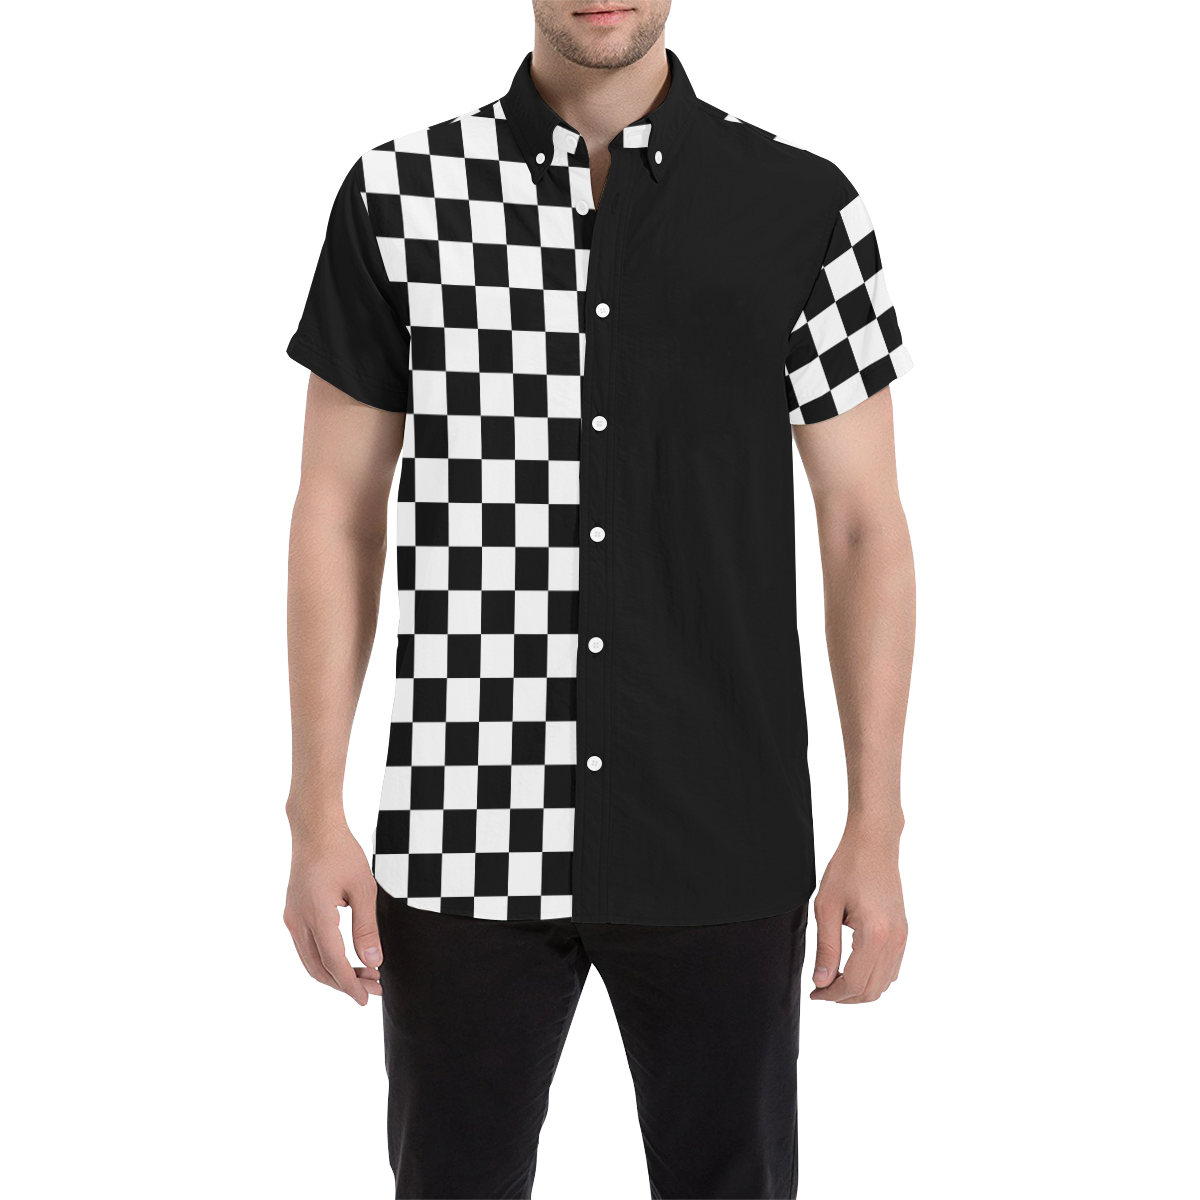 Modern Ska Black and White Checks by ArtformDesigns Men's All Over Print Short Sleeve Shirt (Model T53)